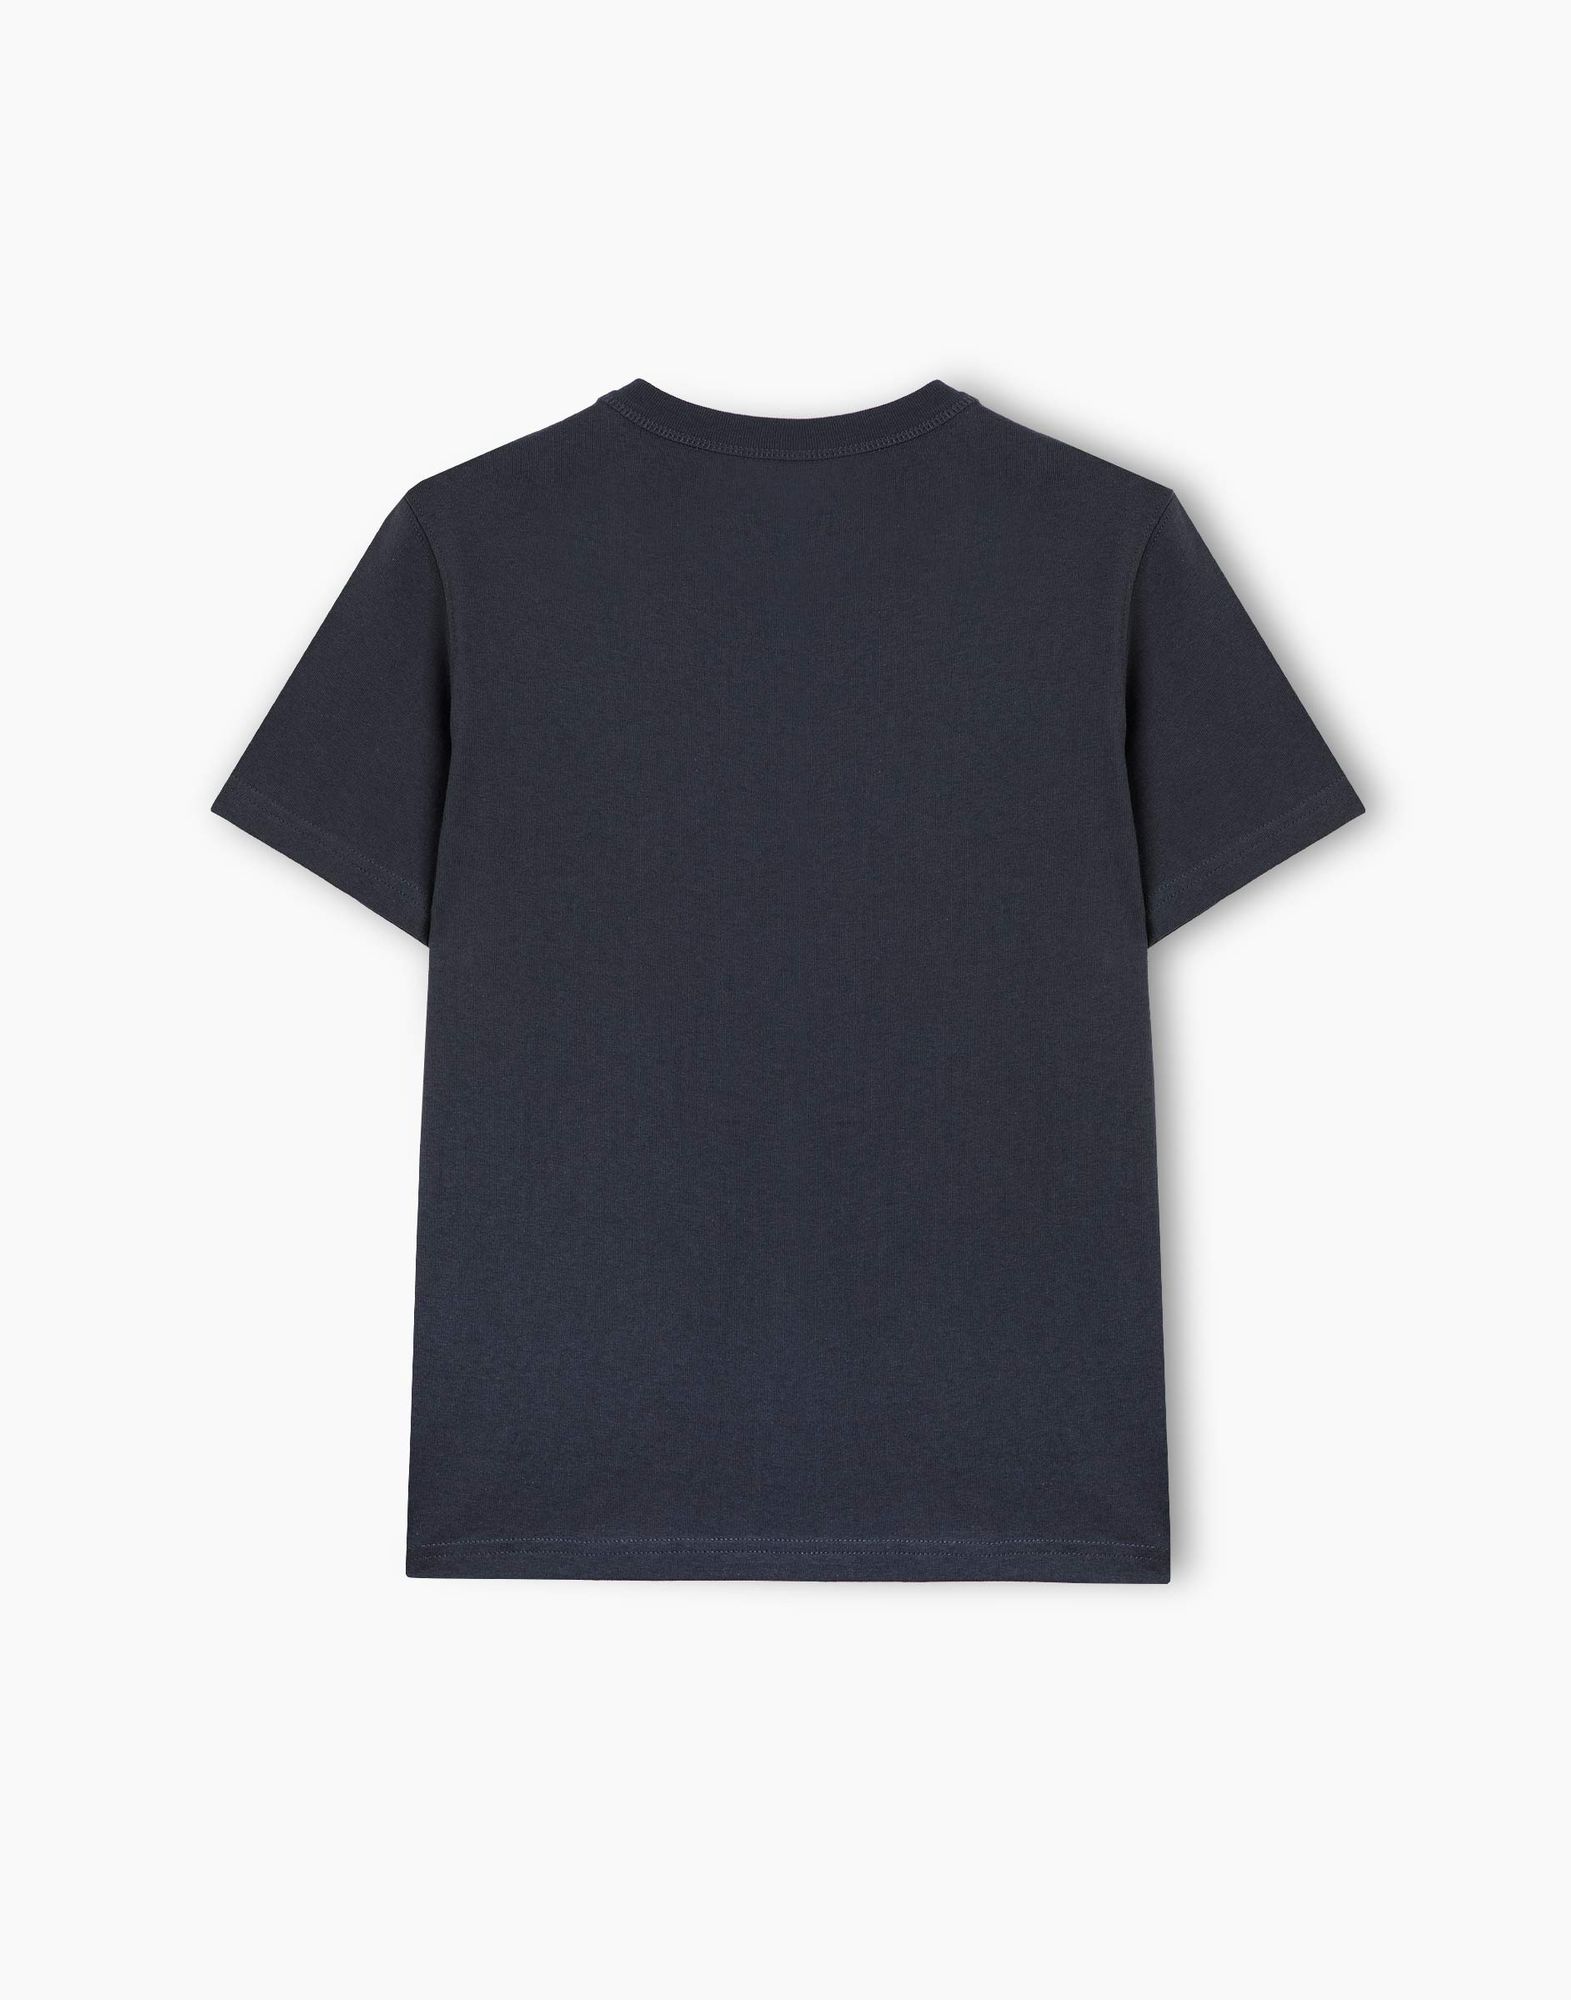 Тёмно-серая футболка Comfort для мальчика-2